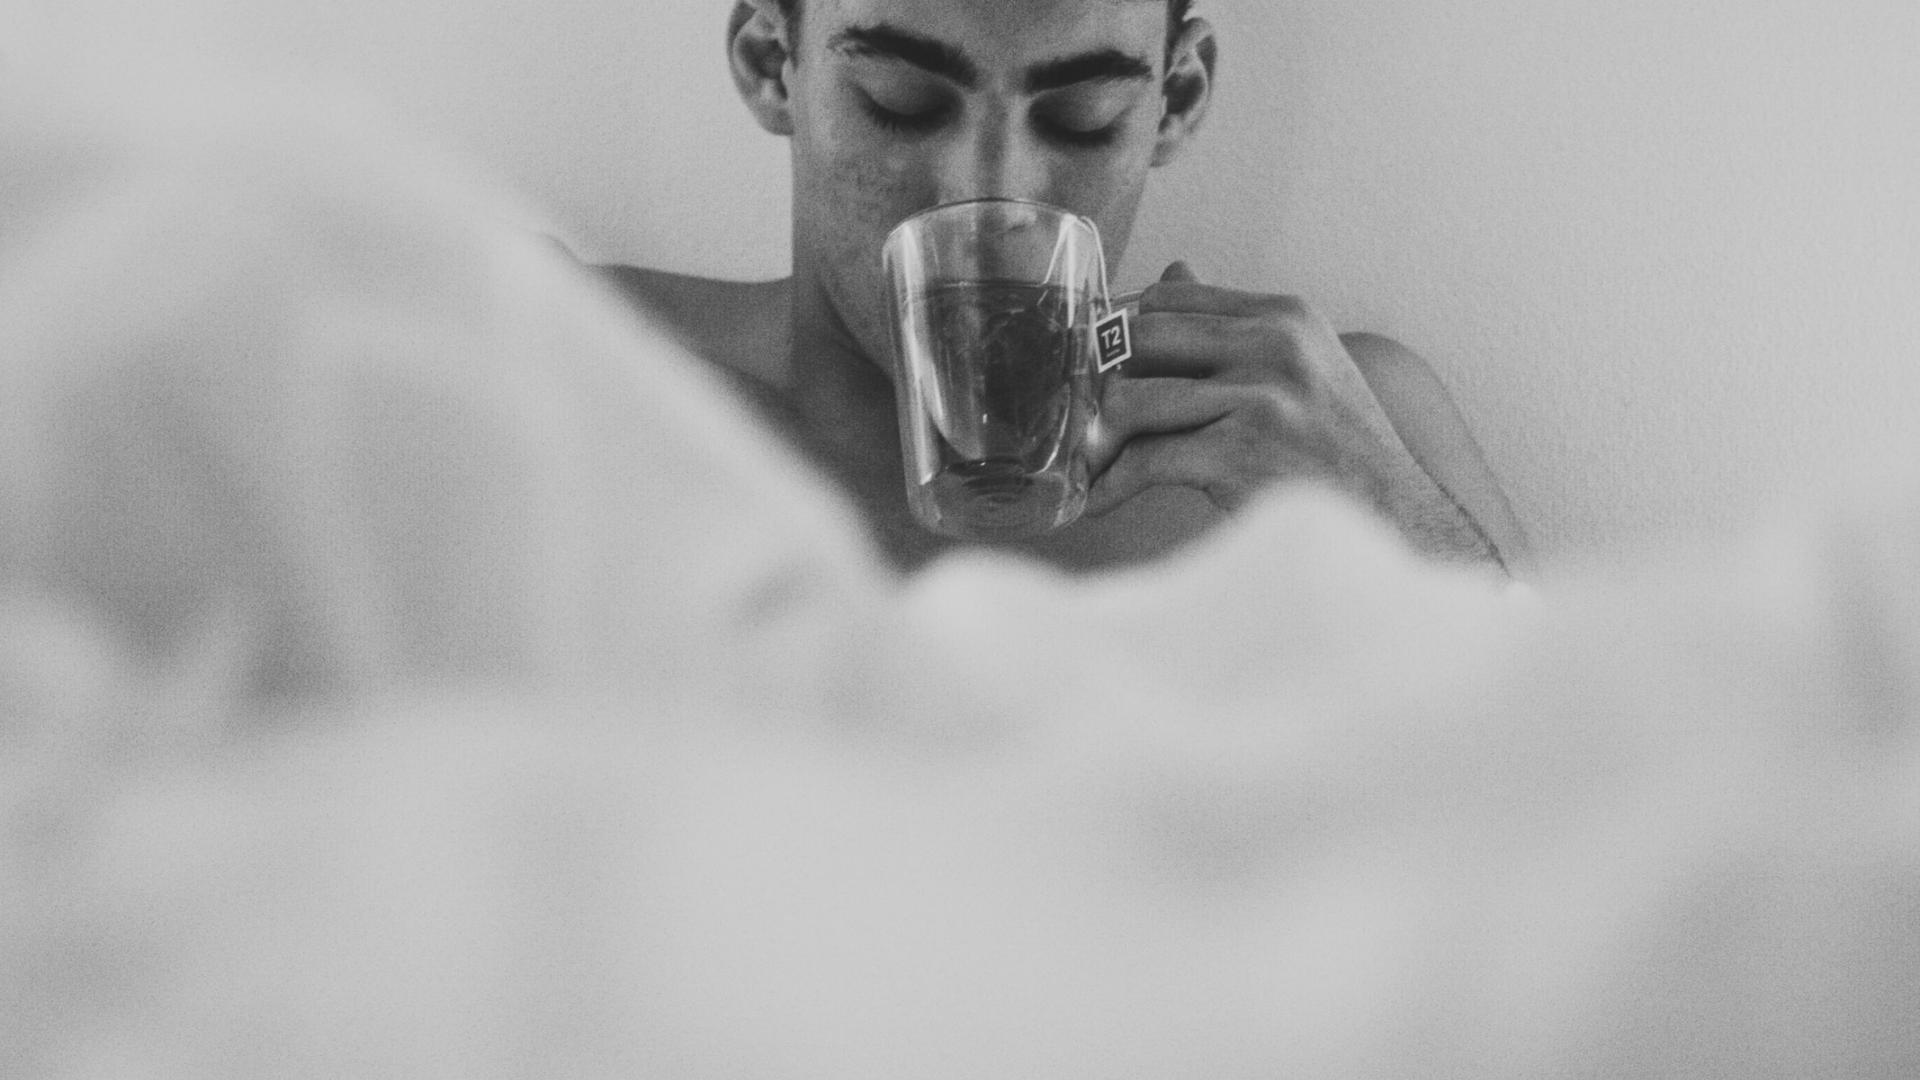 Mann im Bett trinkt Kaffee